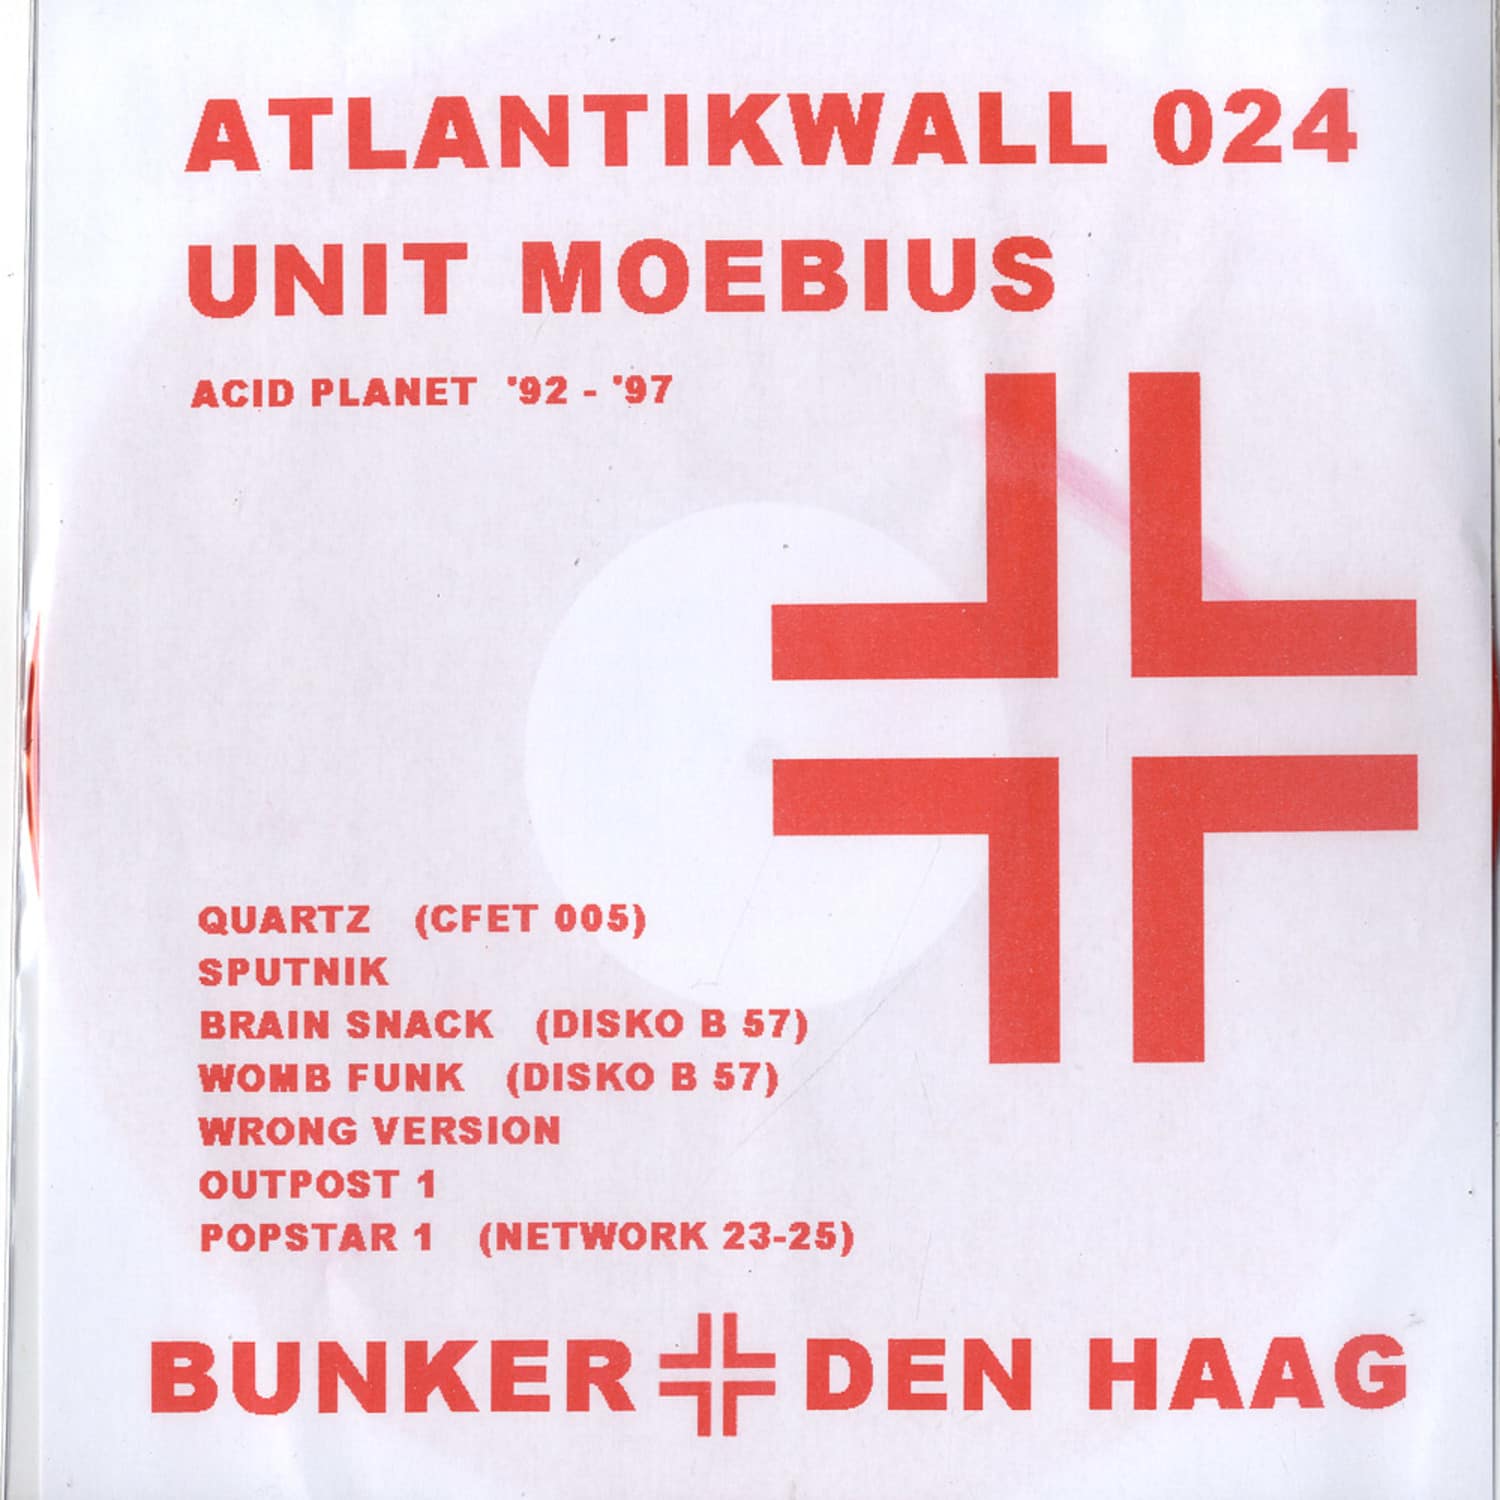 Unit Moebius - UNIT MOEBIUS PT6